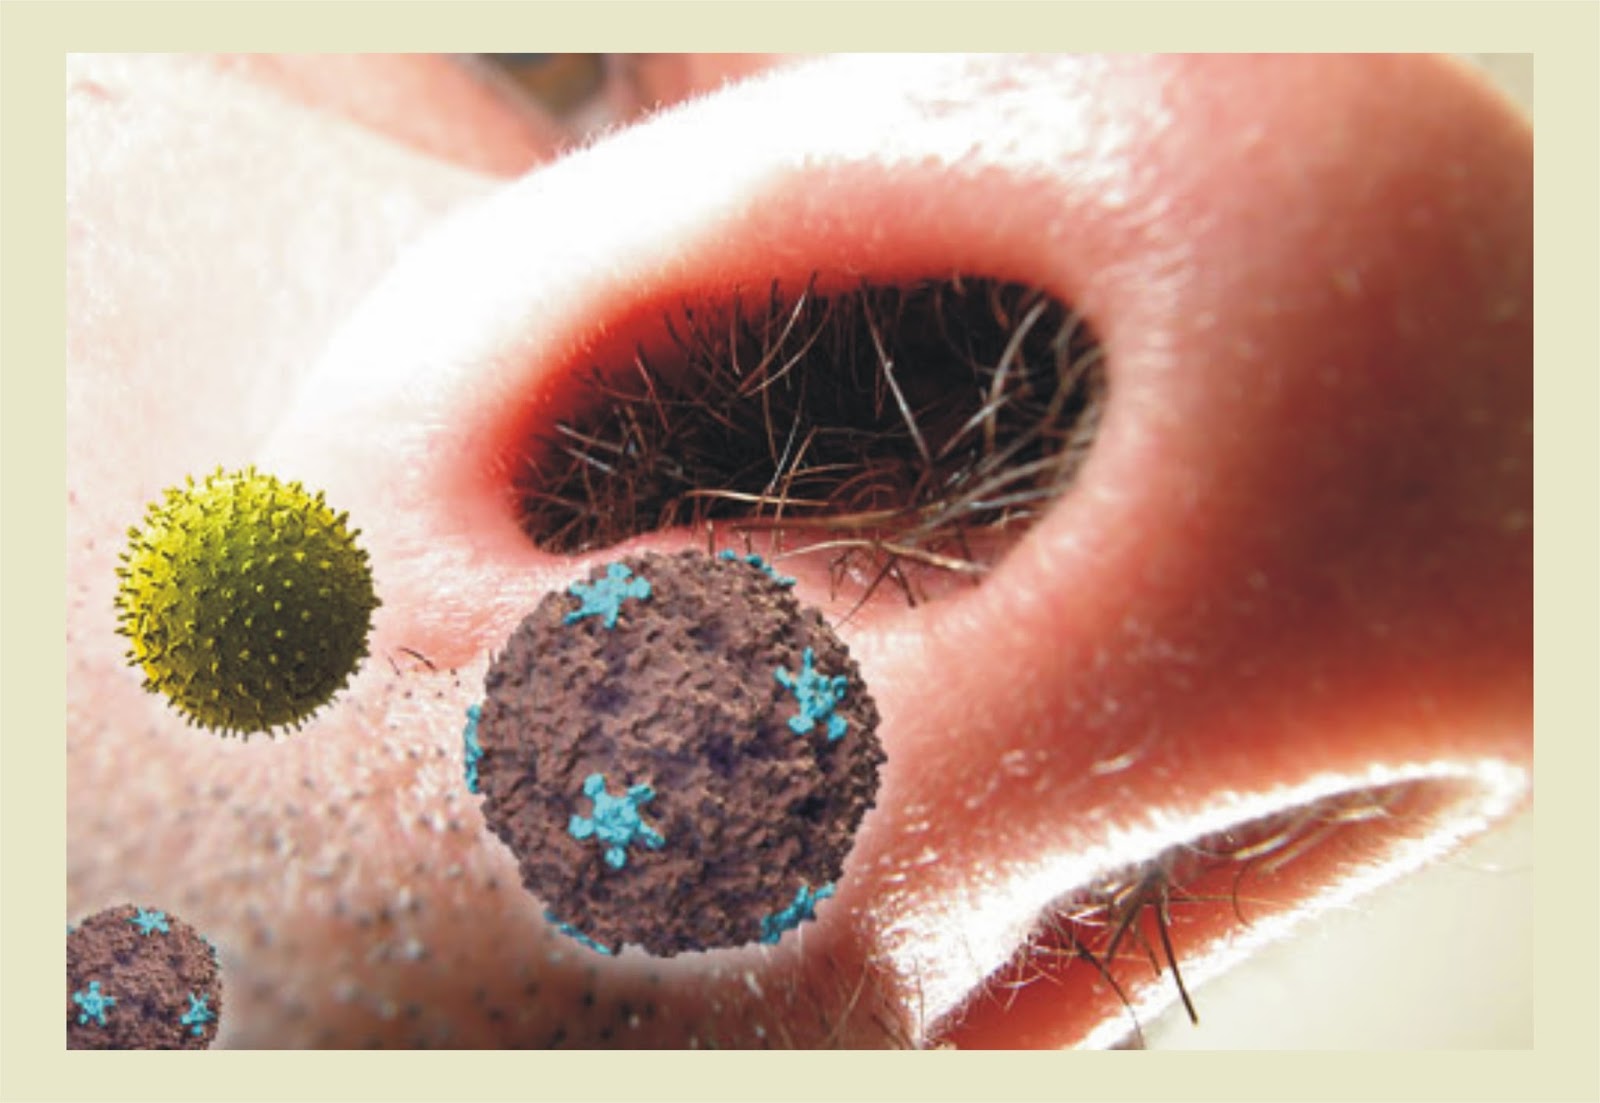 Засохшие сопли в носу. Микробы в носу под микроскопом. Бактерии в носу под микроскопом.